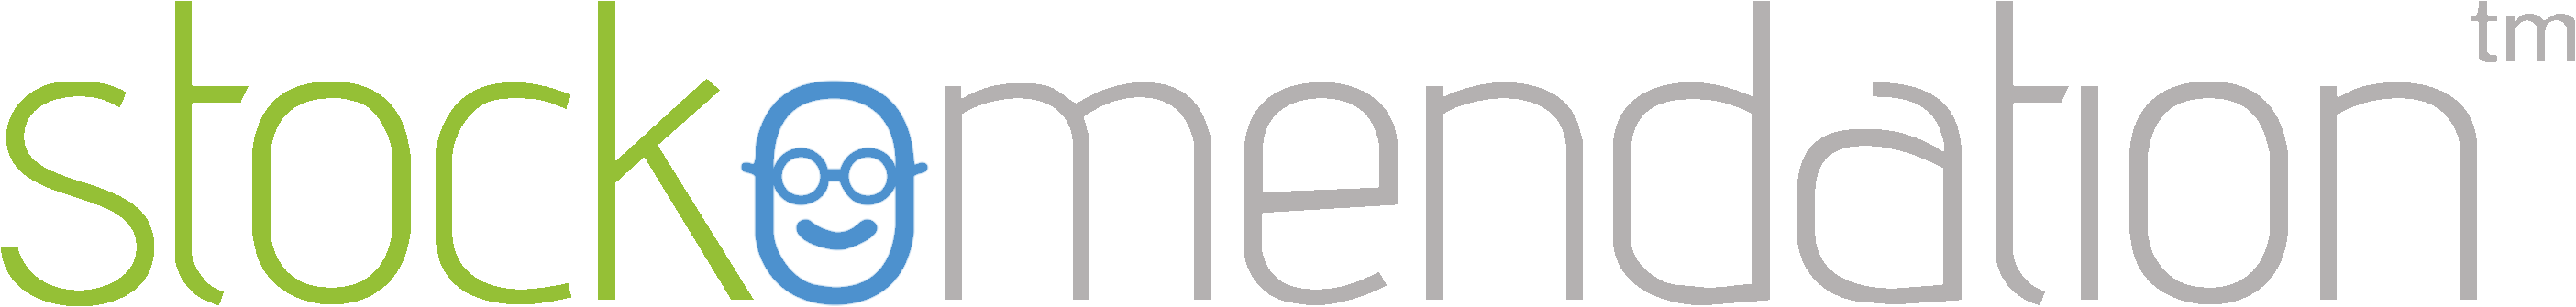 Stockomendation Logo